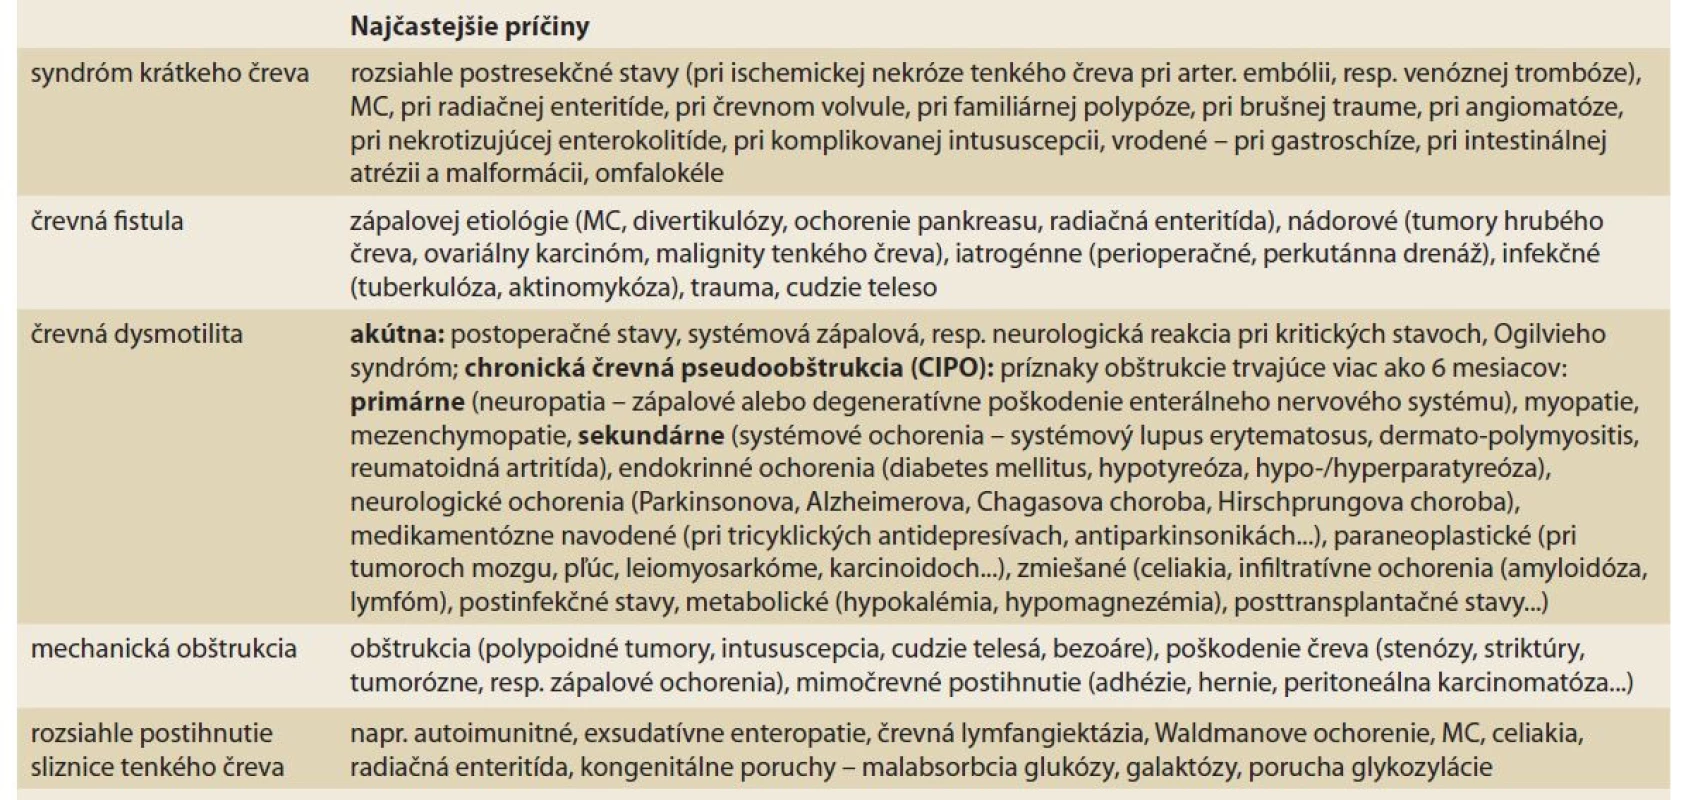 Patofyziologická klasifikácia črevného zlyhania [1].<br>
Tab. 3. Pathophysiological classification of intestinal failure [1].